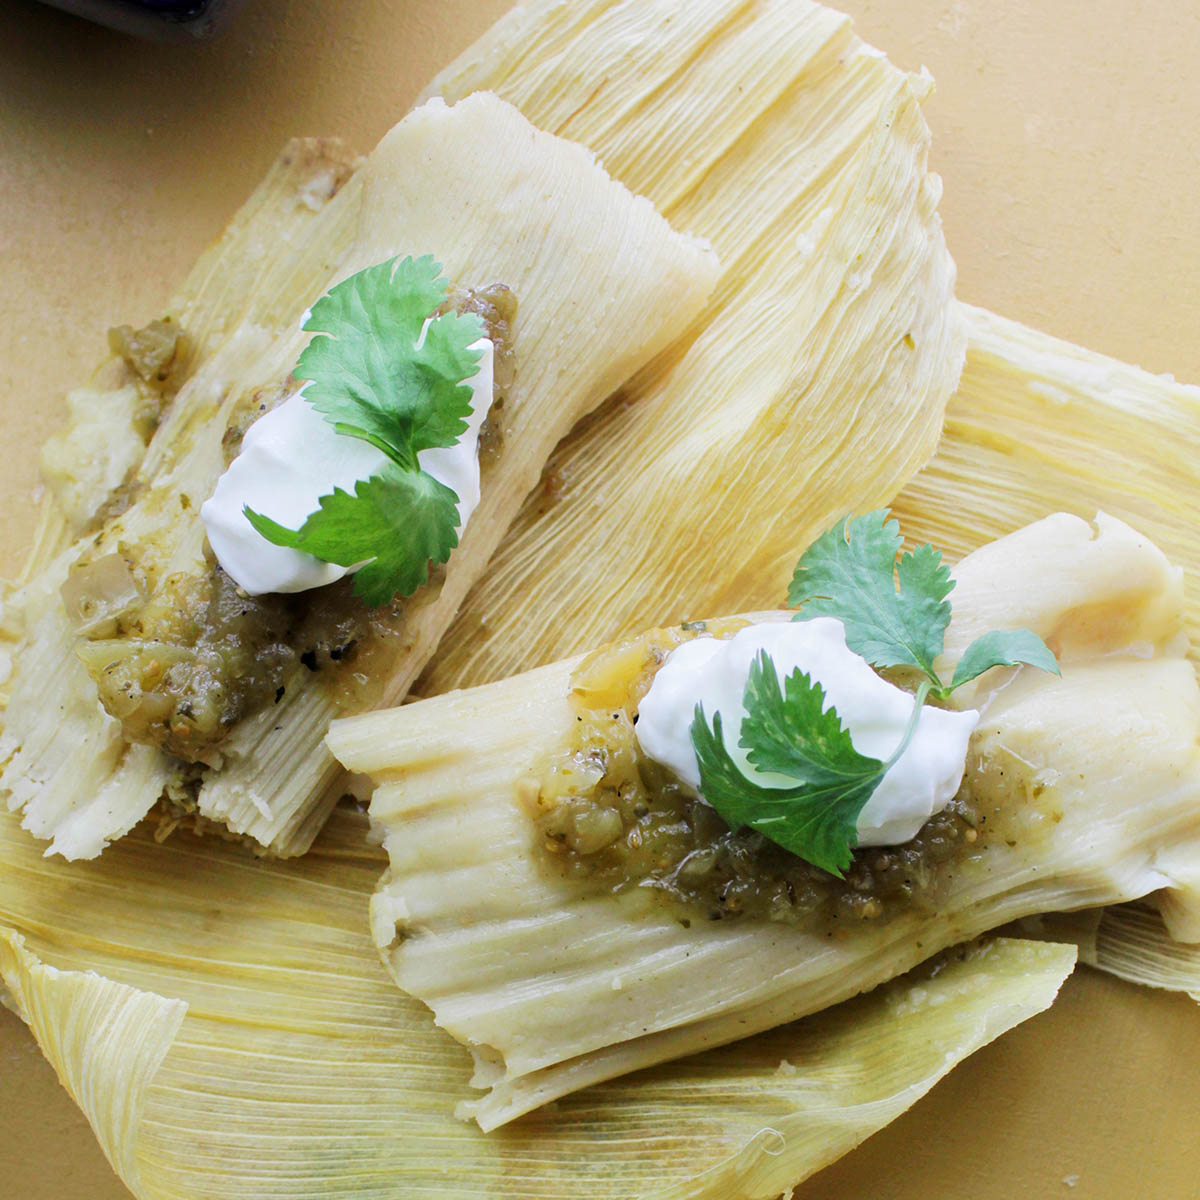 https://homebodyeats.com/wp-content/uploads/2022/05/cook-tamales-in-instant-pot.jpg